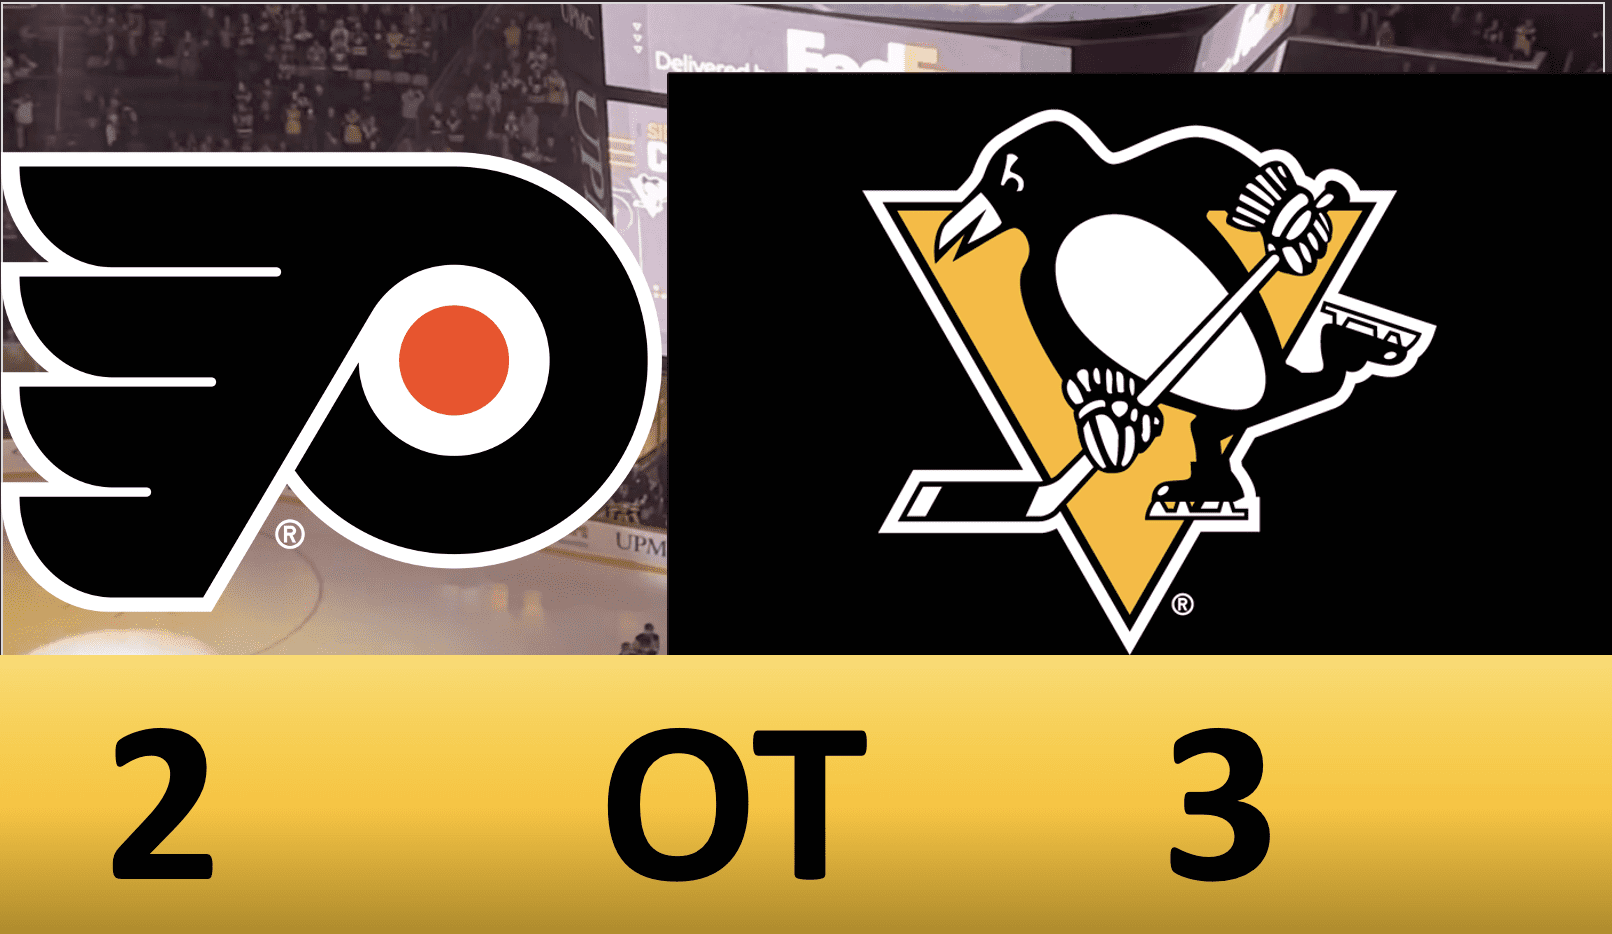 Pittsburgh Penguins OT Winner, Philadelphia Flyers